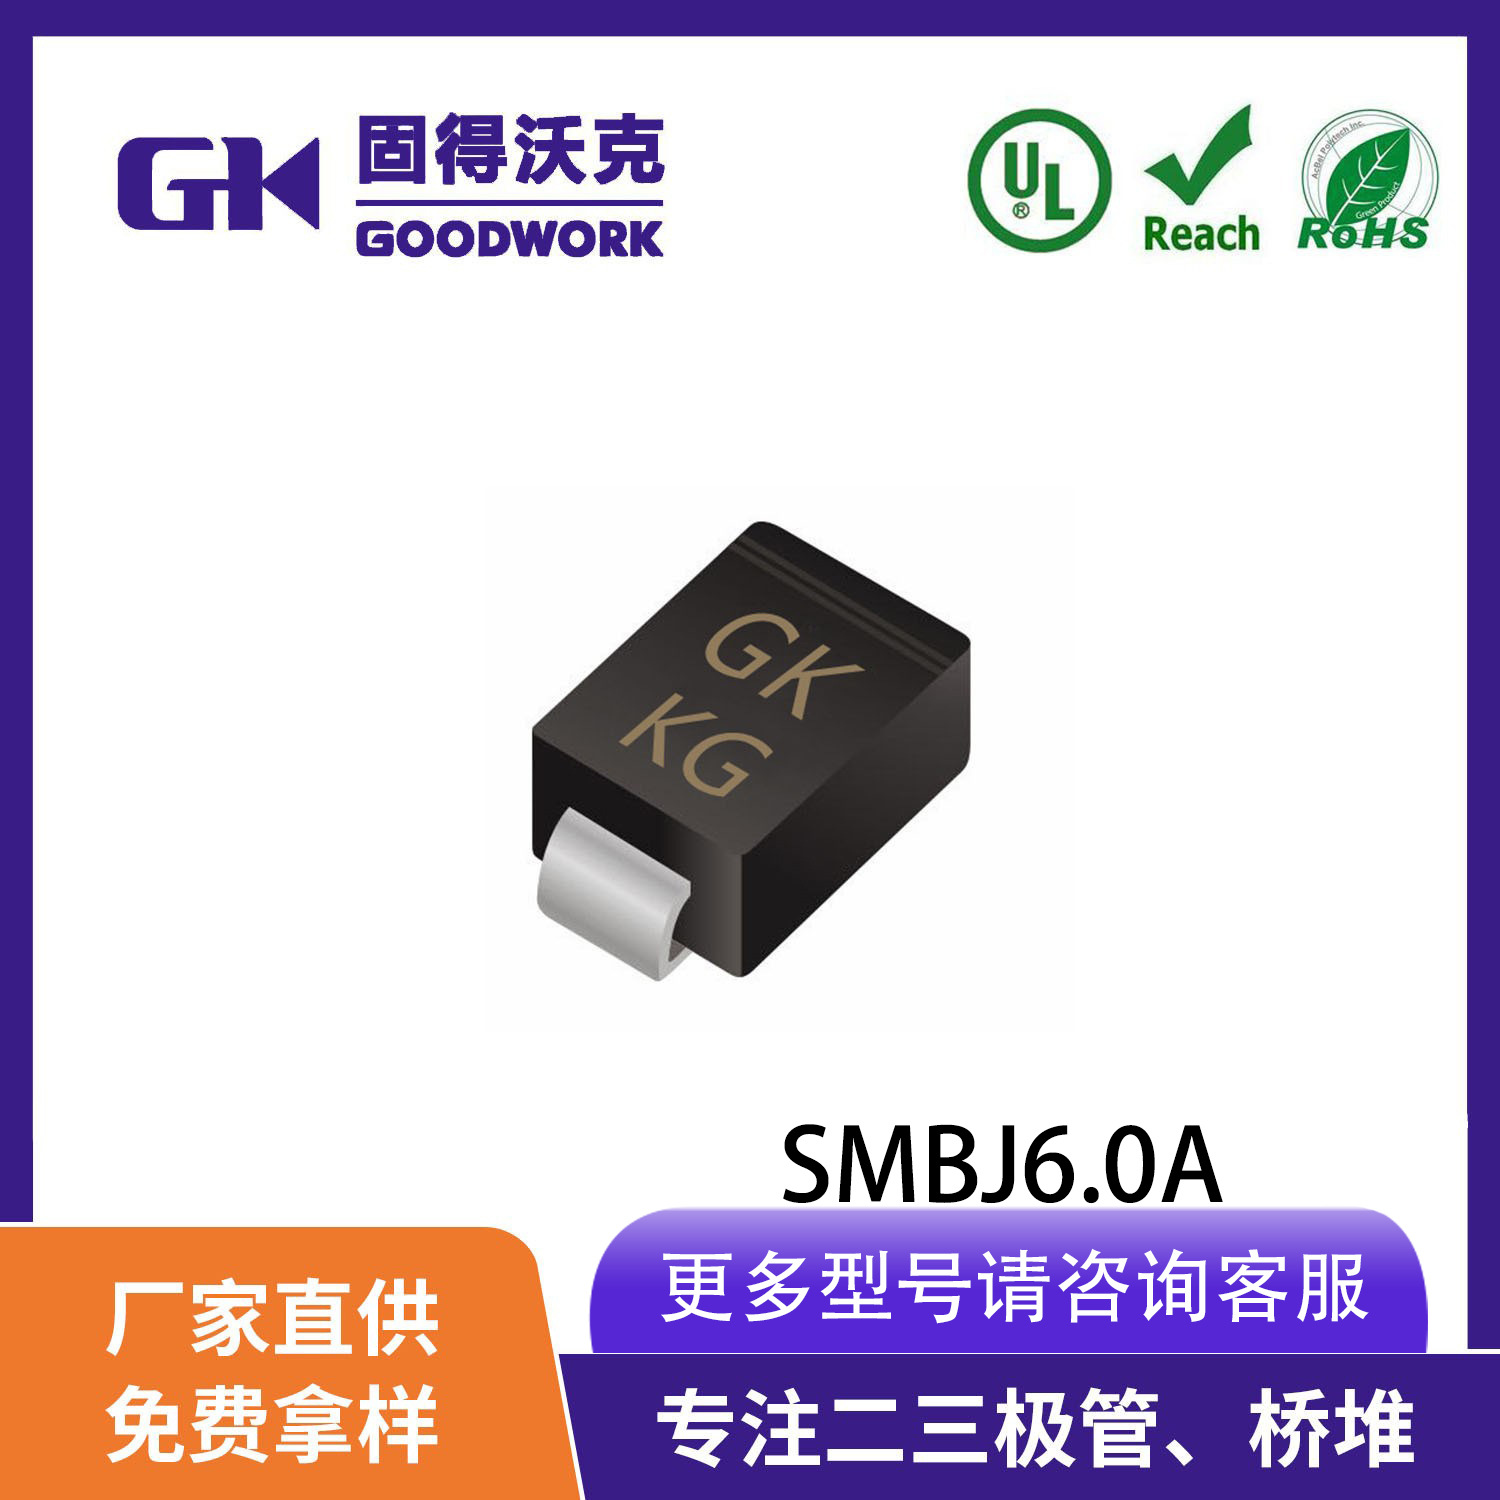 现货供应GK品牌SMBJ6.0A TVS瞬变抑制二极管SMB封装 厂家直销